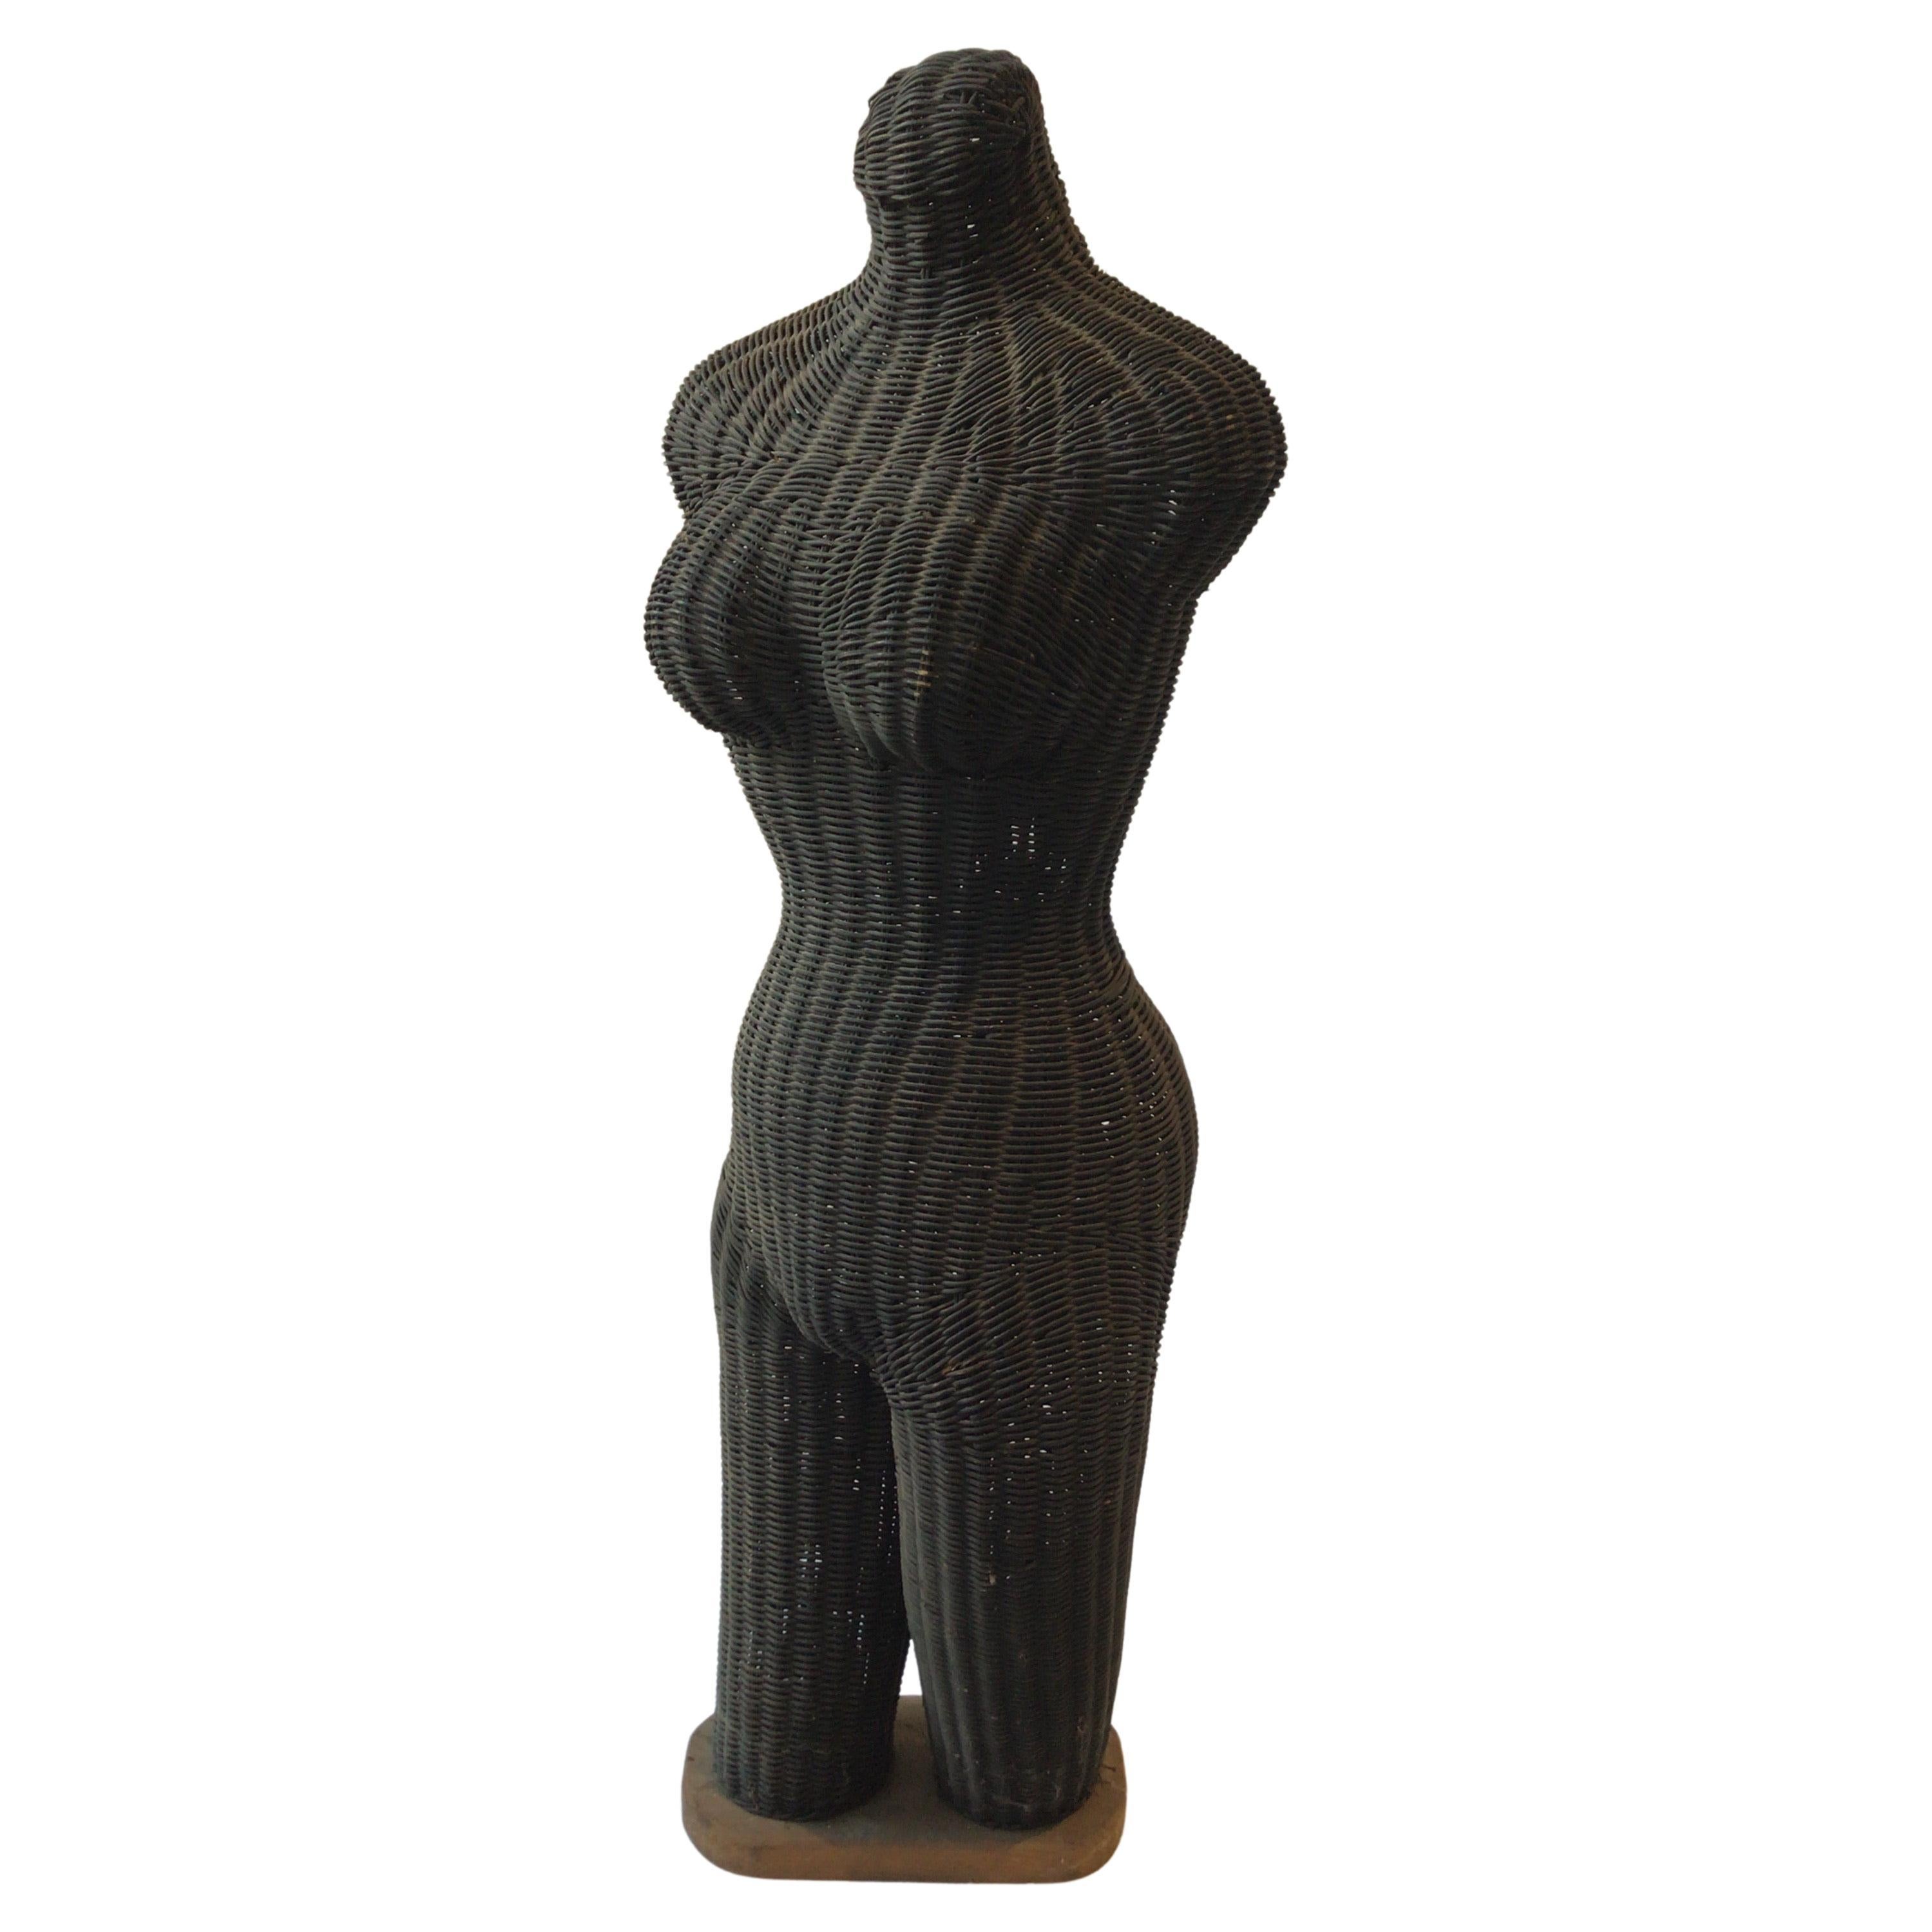 Sculpture en osier des années 1960 d'une femme nue